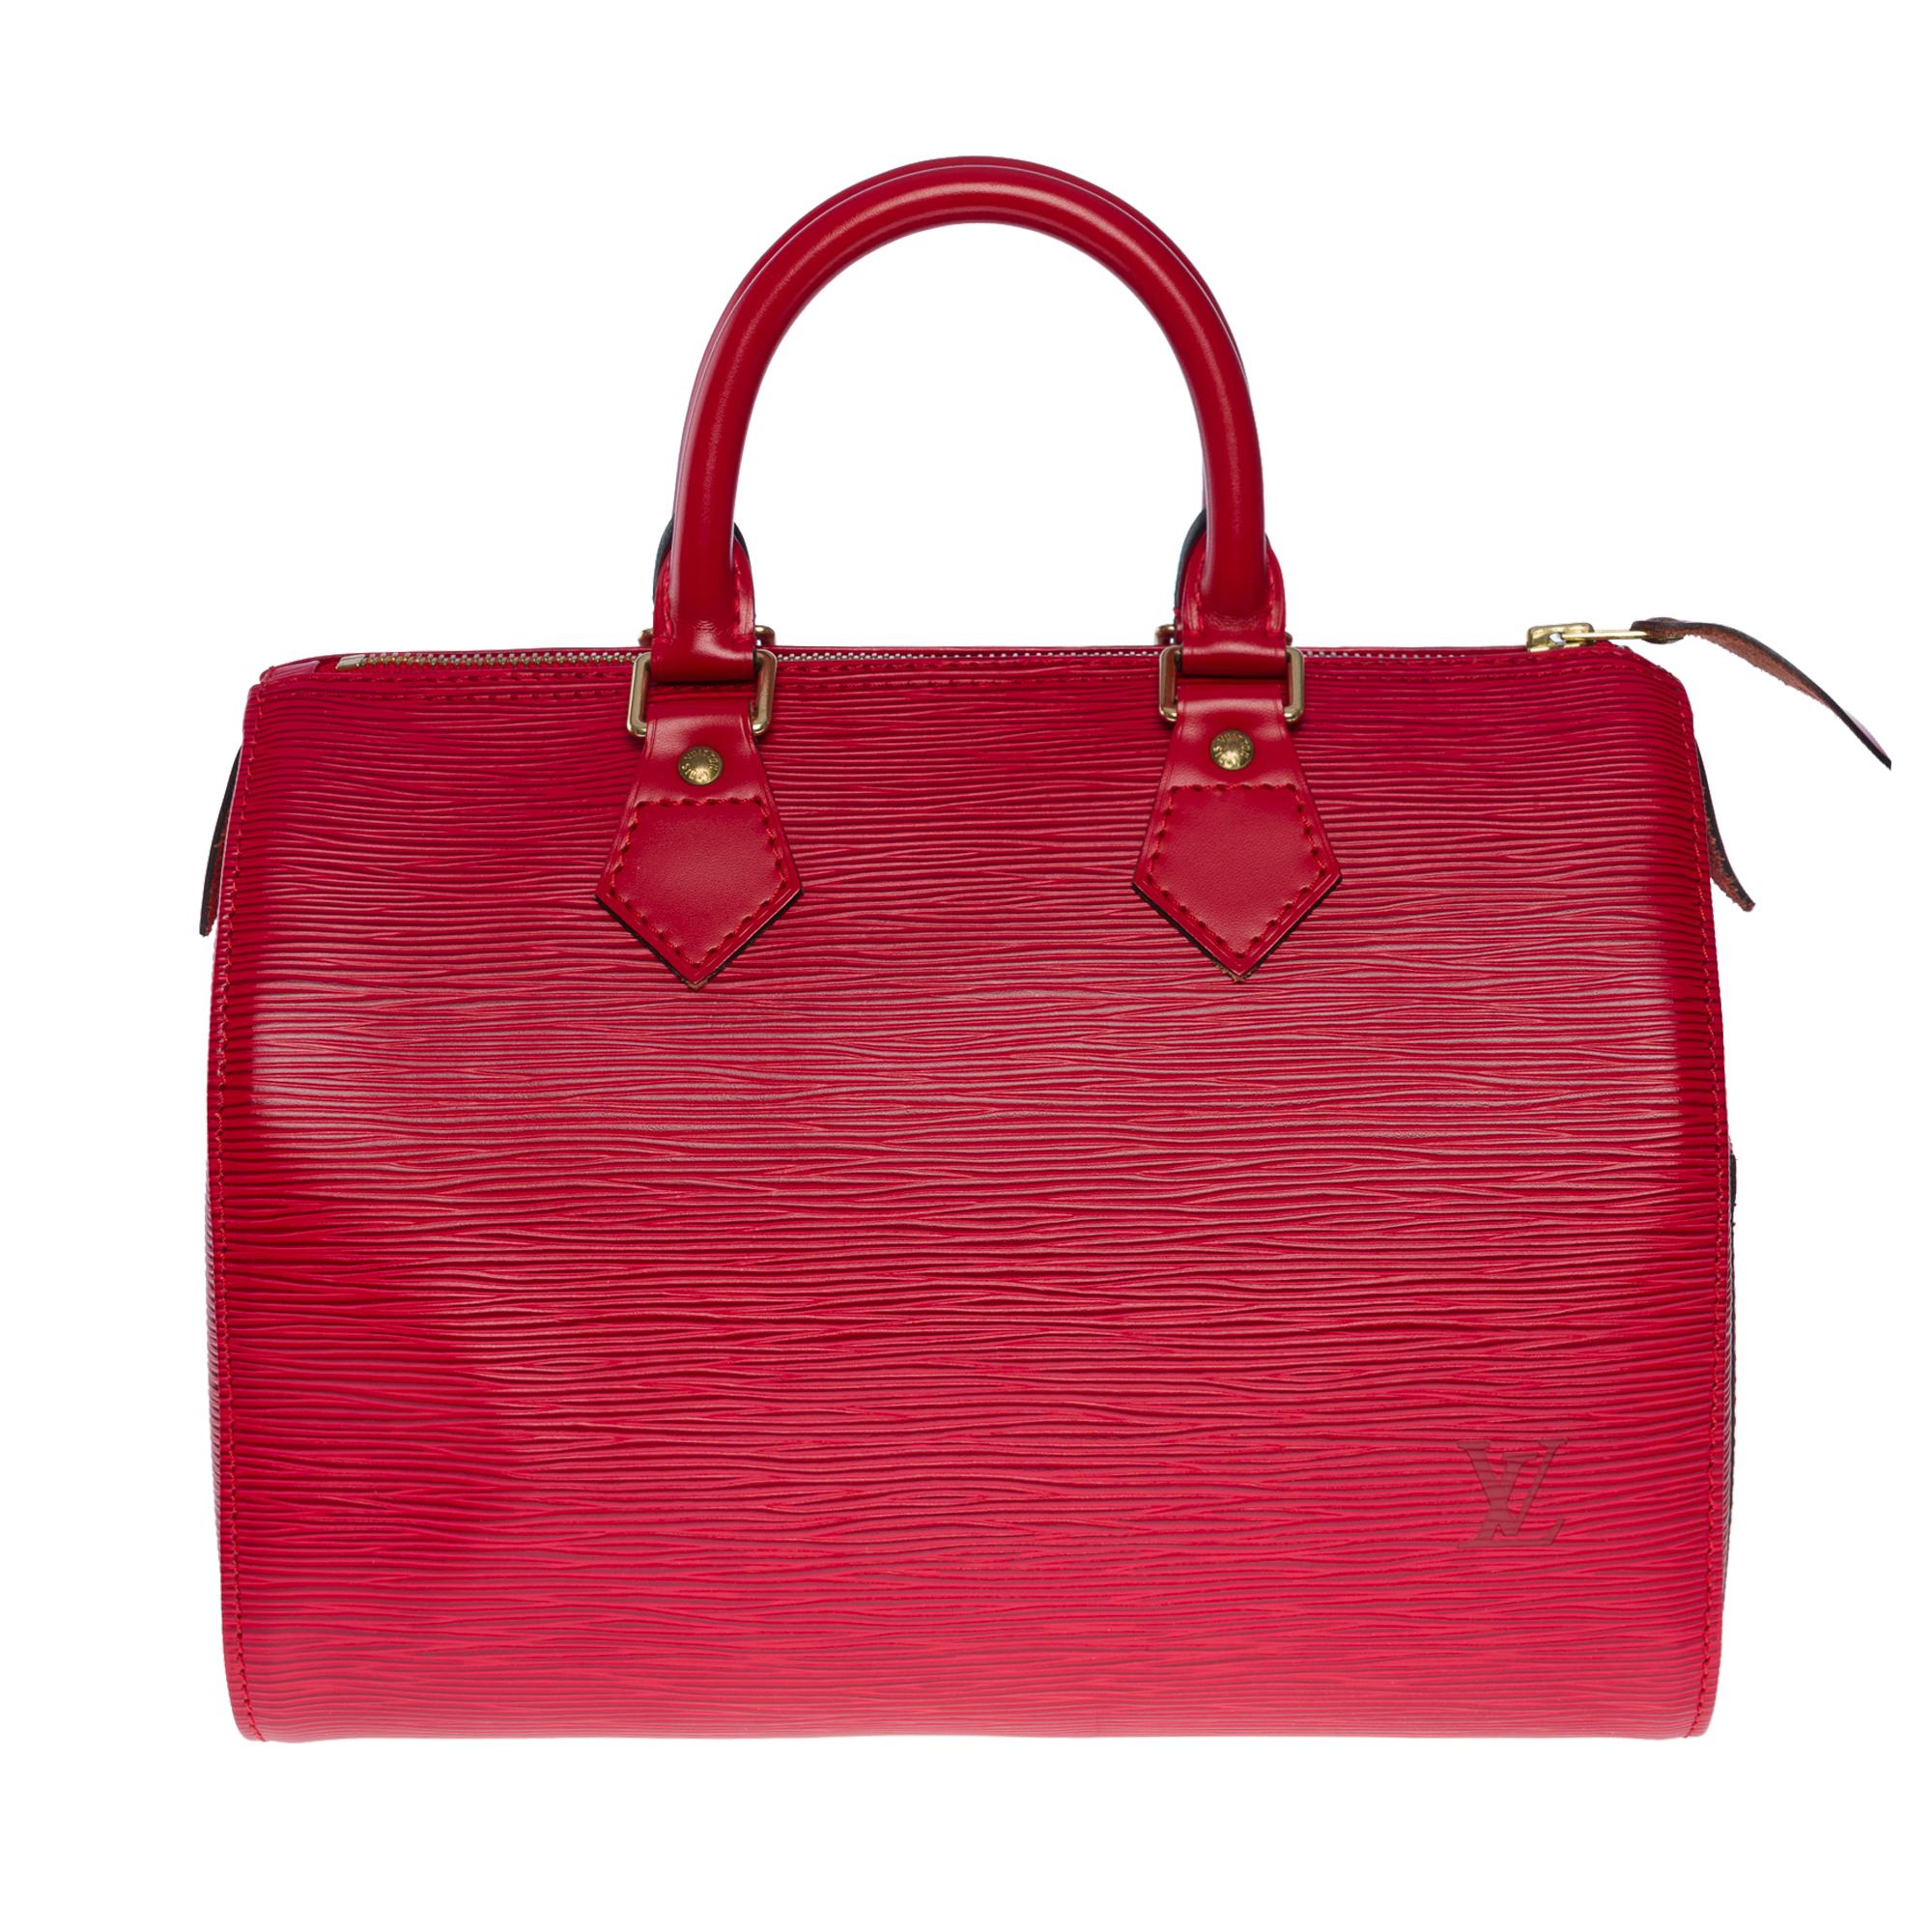 L'indispensable sac à main Louis Vuitton Speedy 30 en cuir épi rouge castillan, métal doré, double anse en cuir rouge permettant un portage à la main.

Fermeture à glissière
Intérieur en daim rouge avec une poche plaquée ouverte
Signature : 